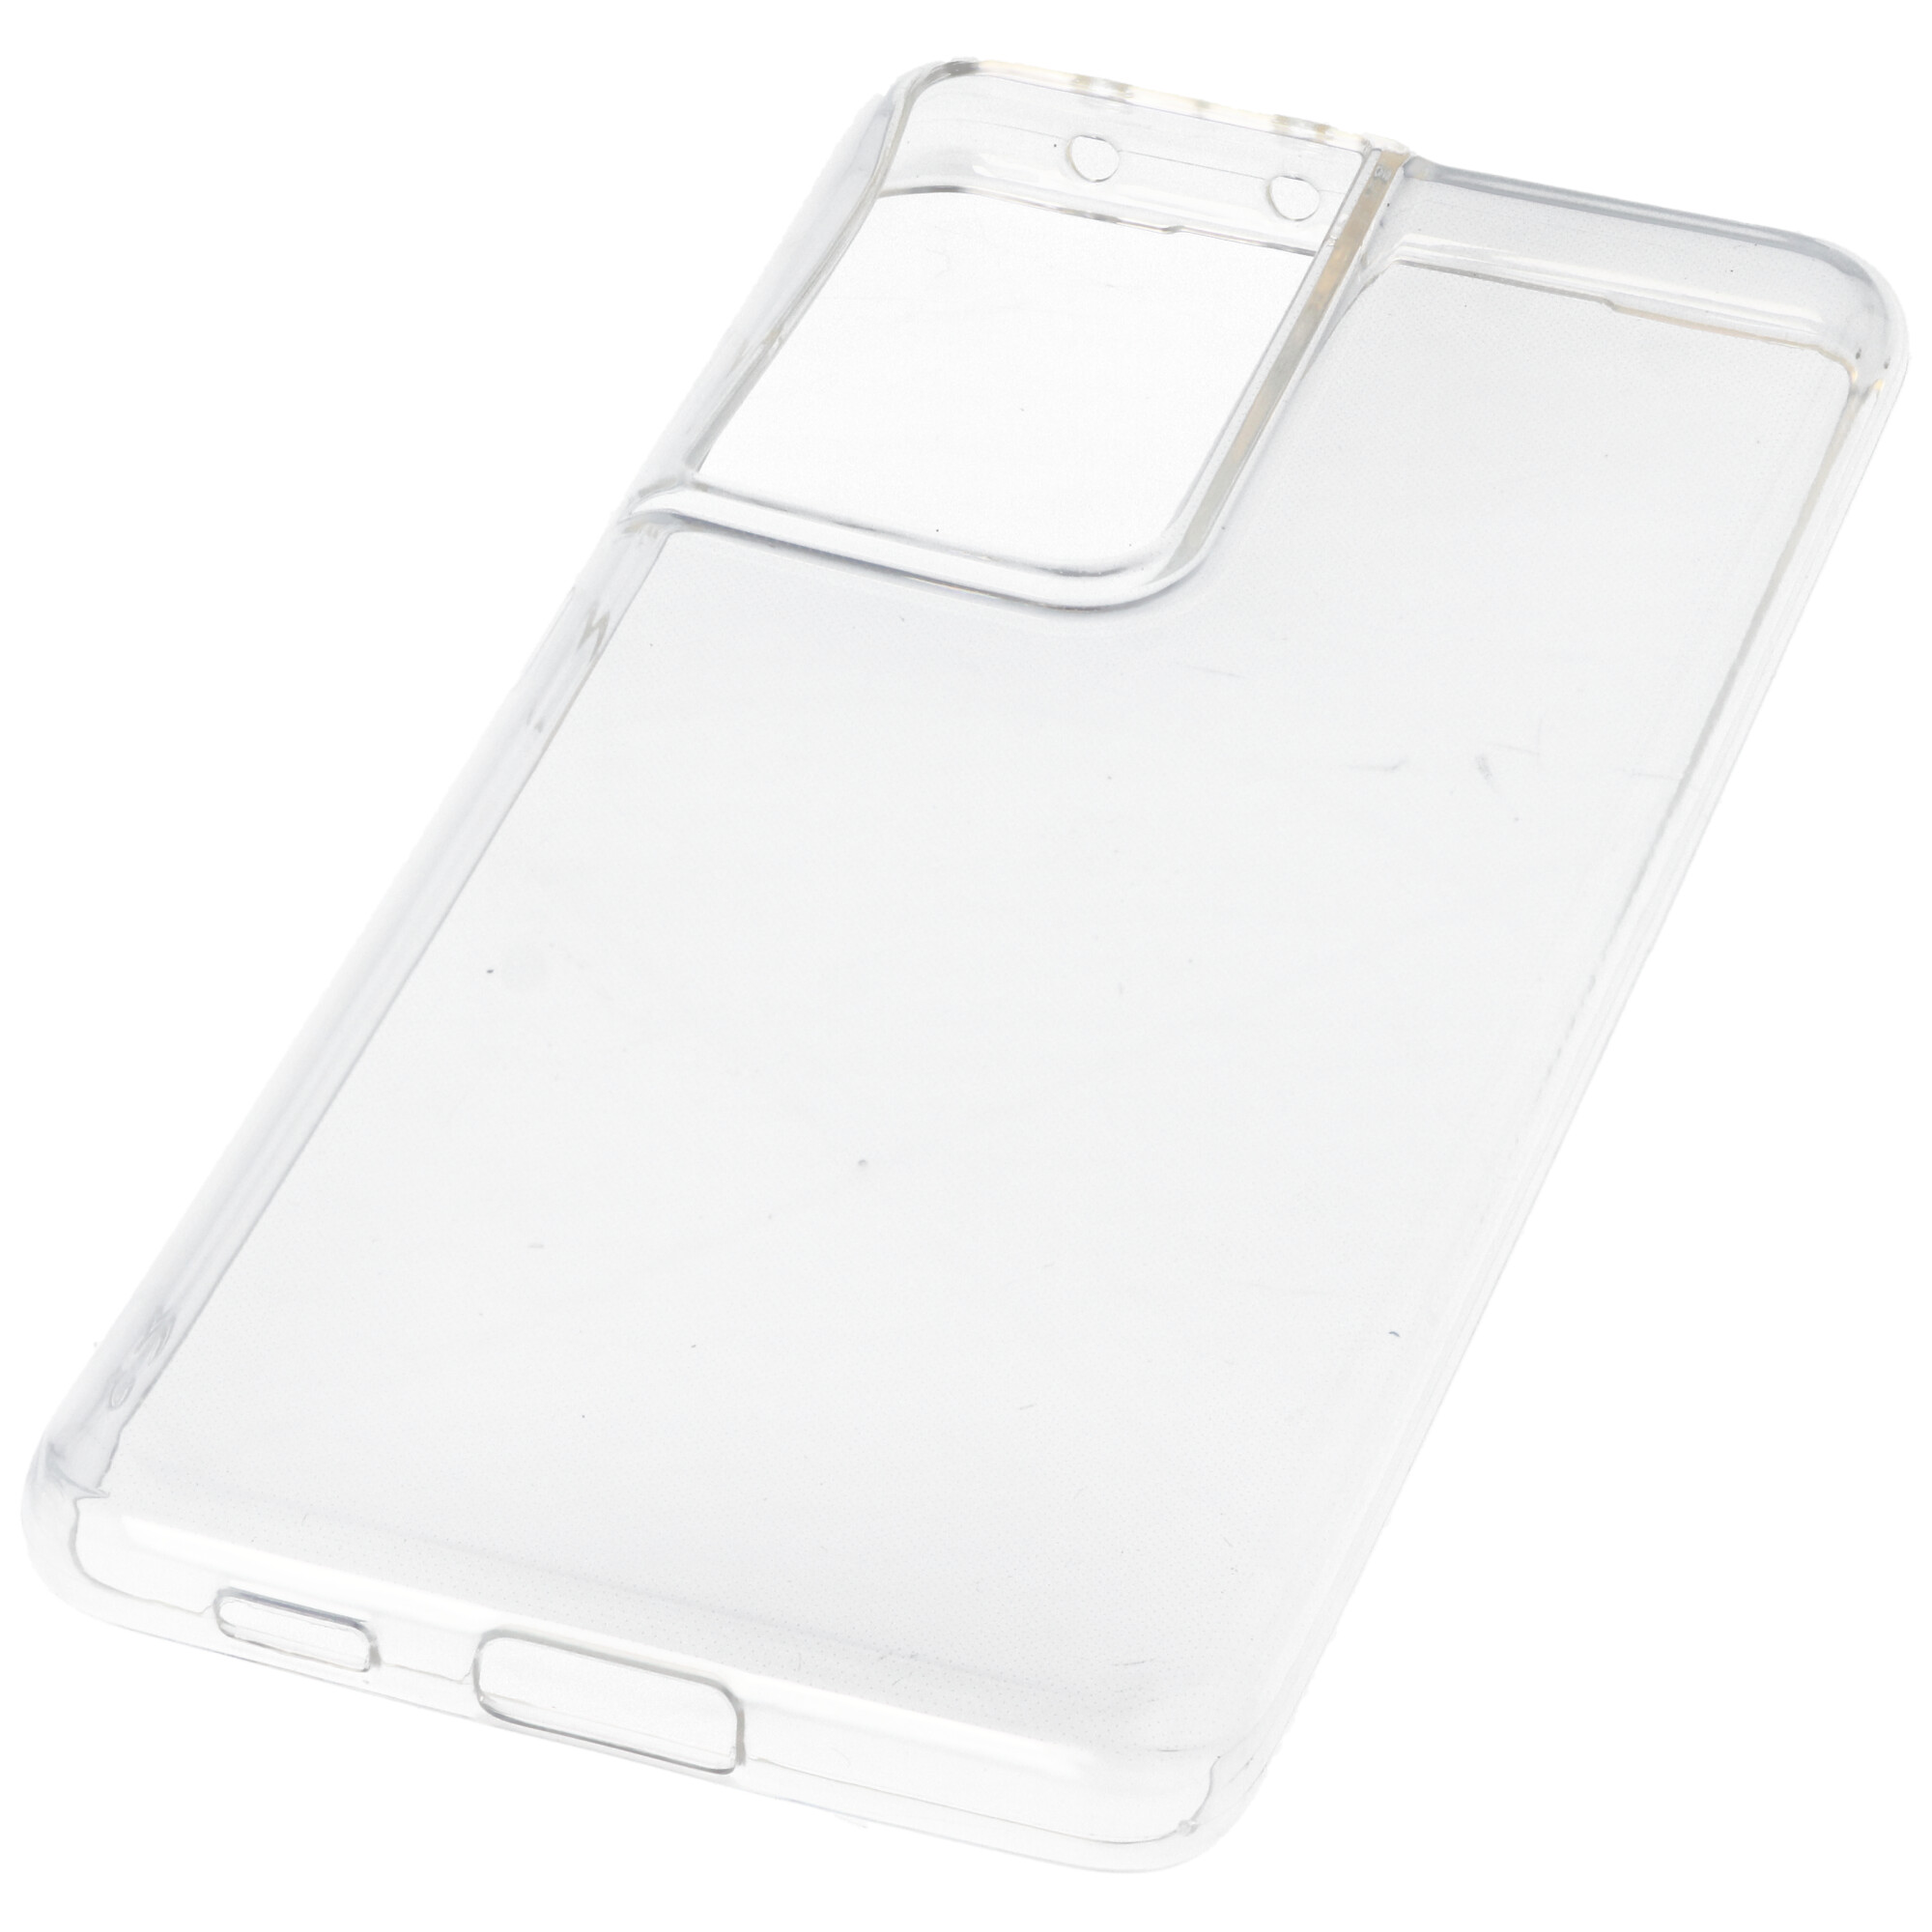 Hülle passend für Samsung Galaxy S21 Ultra, S30 Ultra transparente Schutzhülle, Anti-Gelb Luftkissen Fallschutz Silikon Handyhülle robustes TPU Case